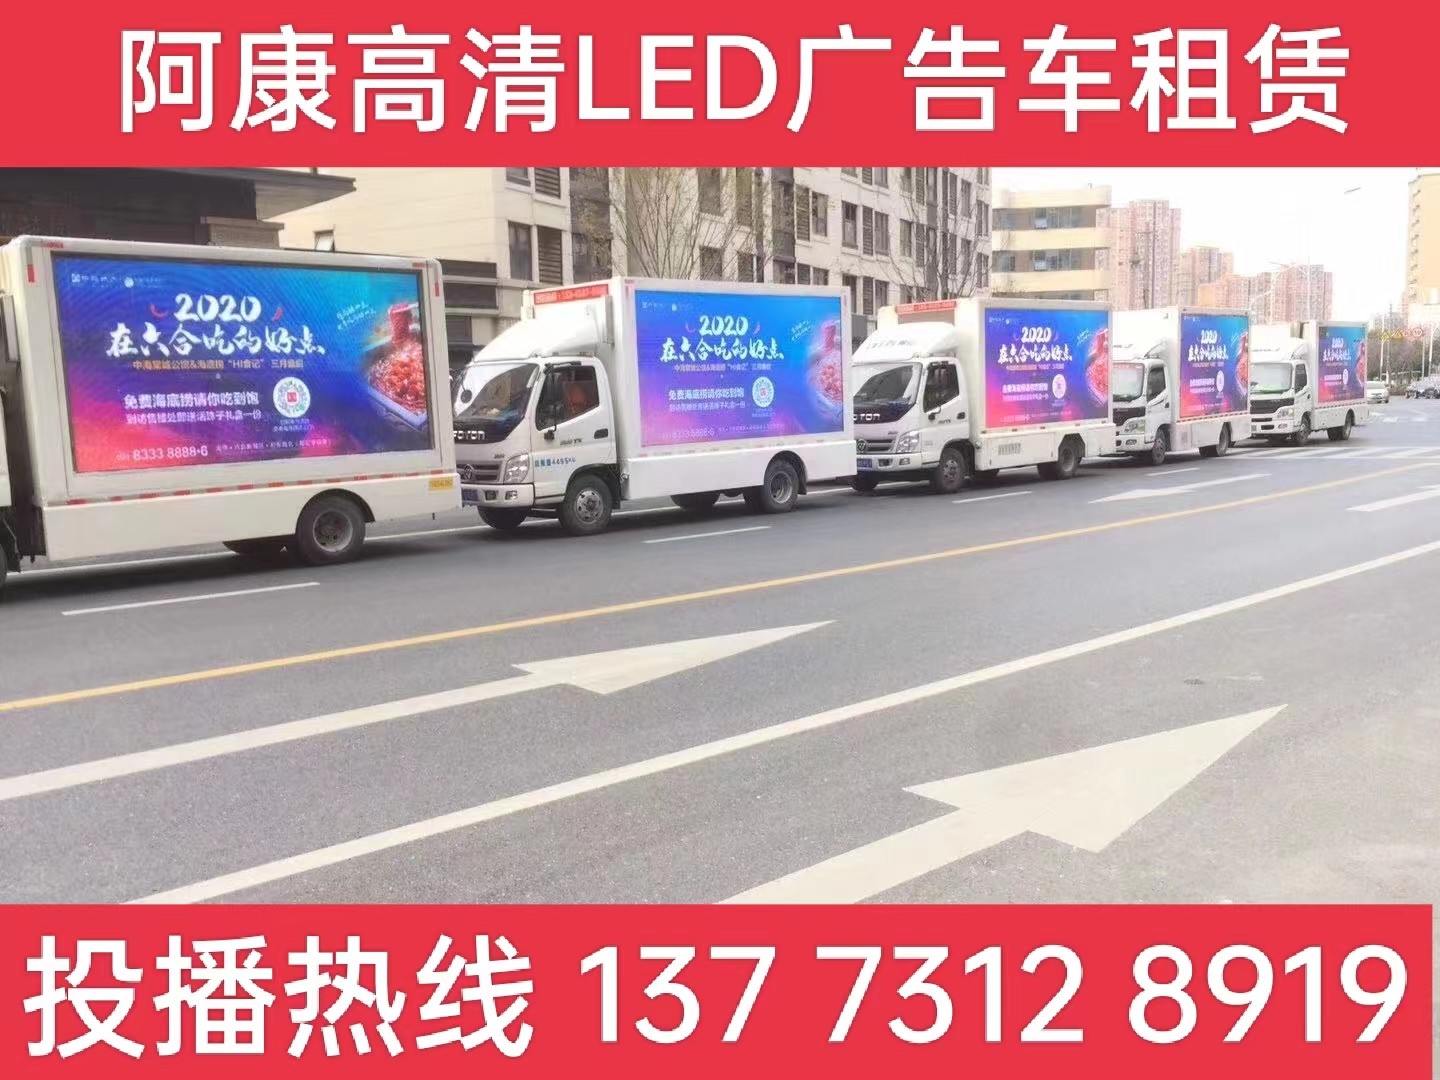 南京宣传车出租-海底捞LED广告